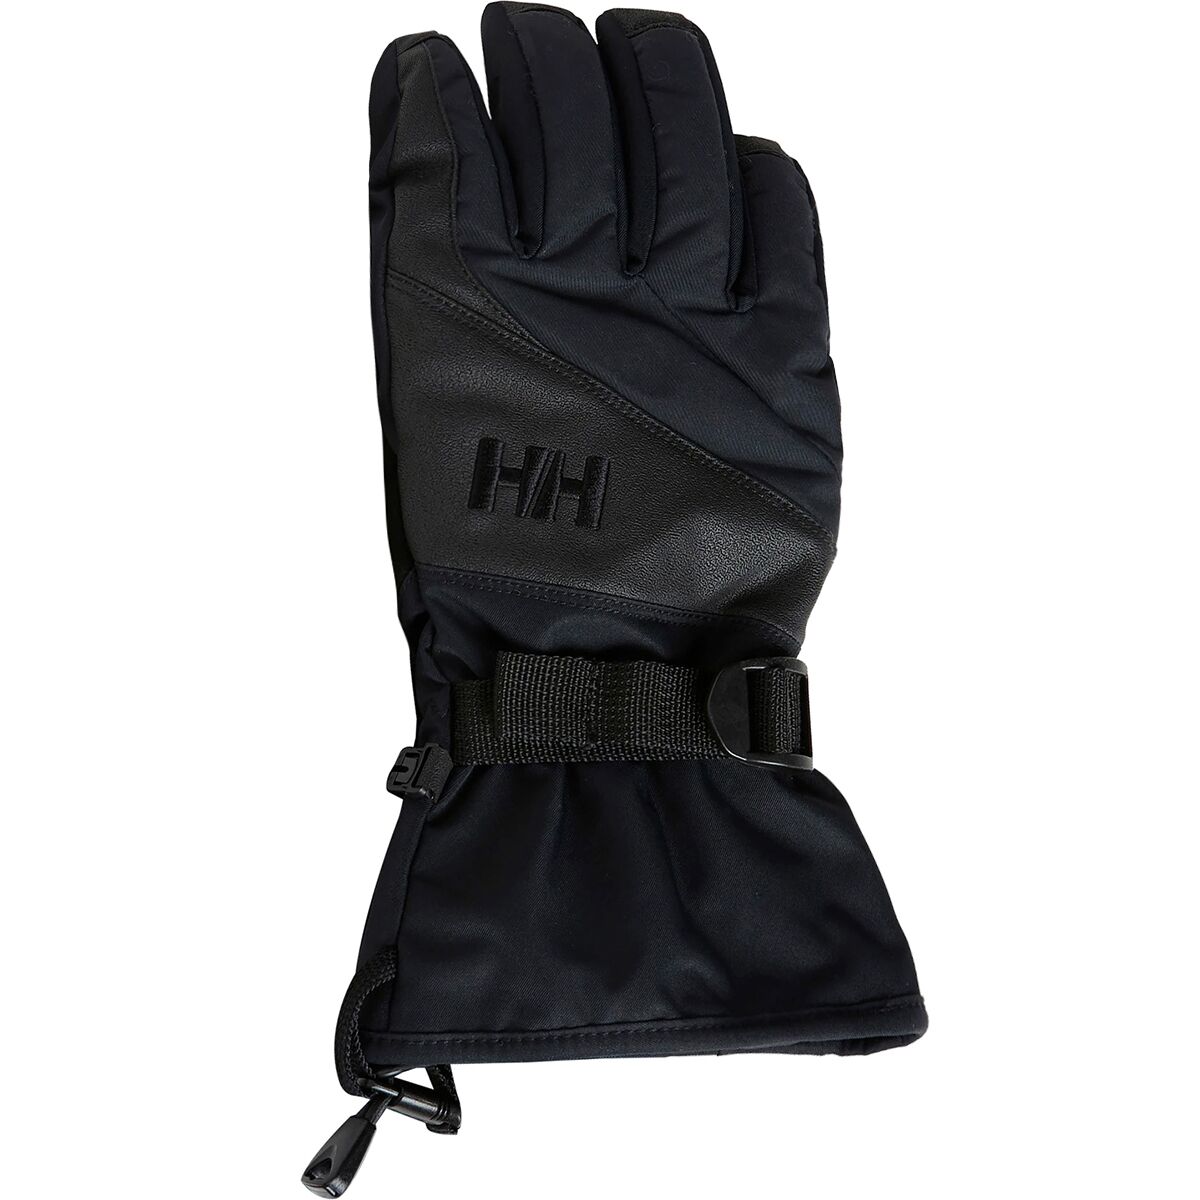 Helly Hansen Freeride Mix Glove - Women's